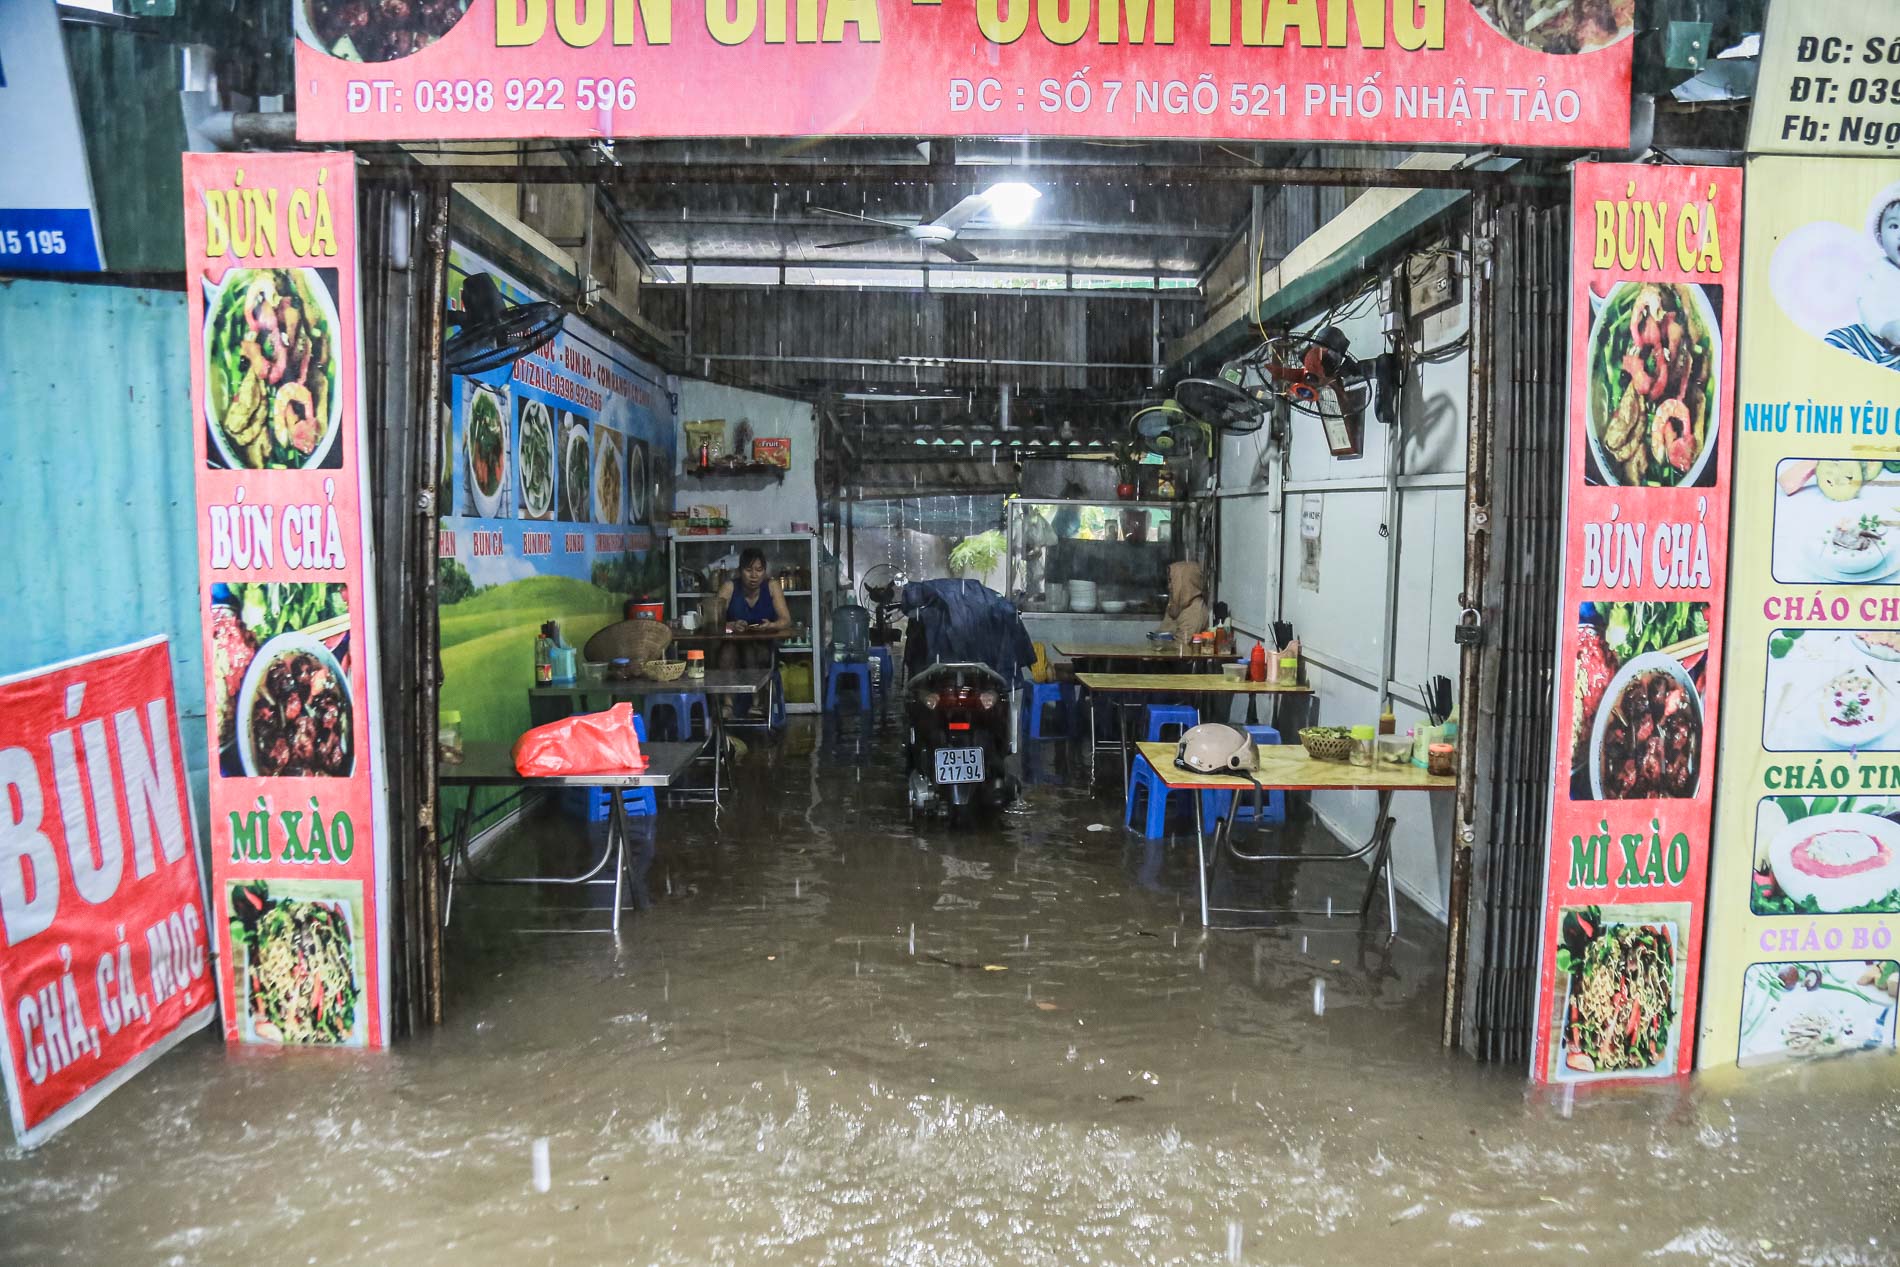 Hà Nội 'chìm trong biển nước' sau cơn mưa lớn - Ảnh 7.